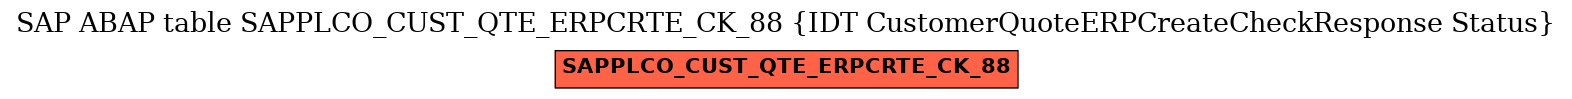 E-R Diagram for table SAPPLCO_CUST_QTE_ERPCRTE_CK_88 (IDT CustomerQuoteERPCreateCheckResponse Status)